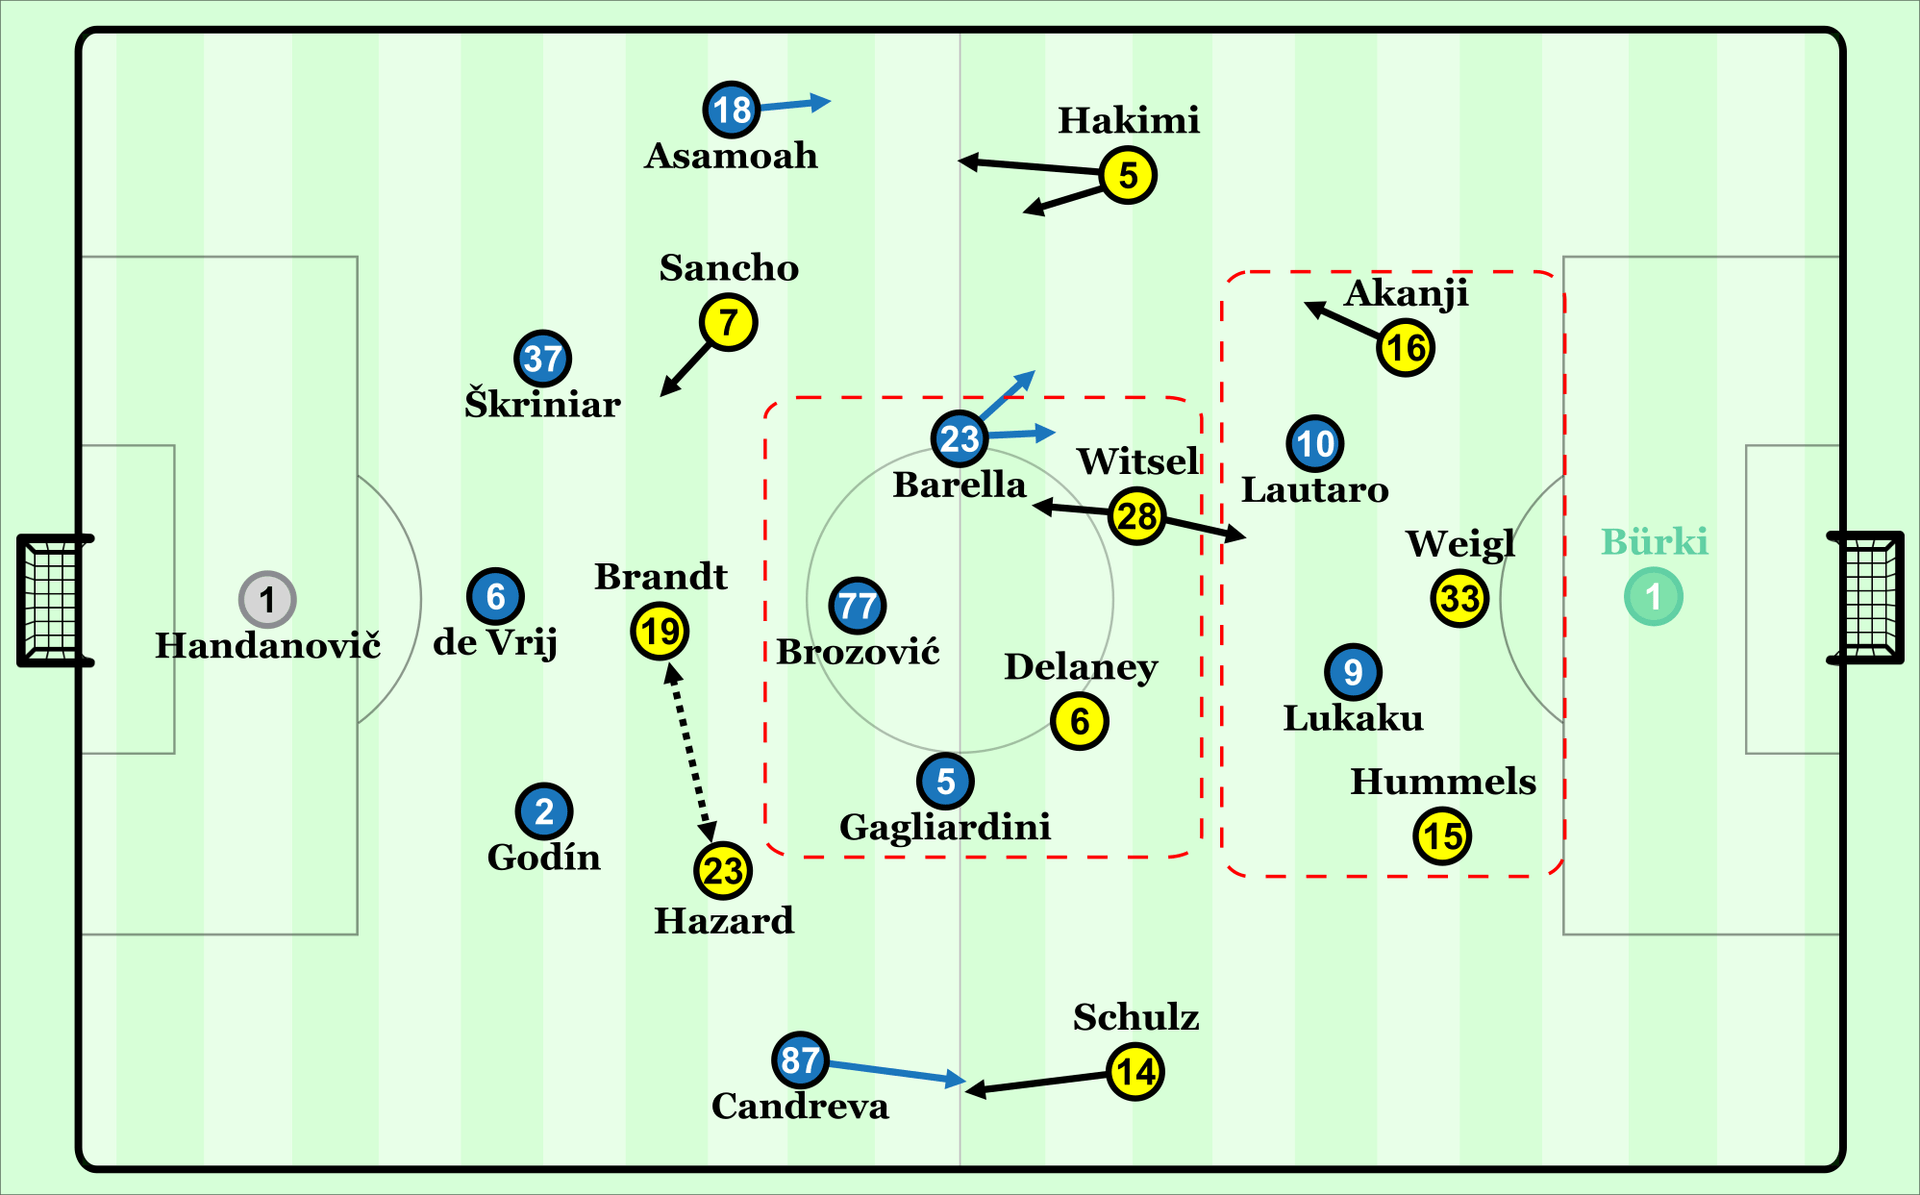 In diesen Grundformationen spielten beide Mannschaften. Dortmund hatte zwar Überzahl in der Abwehr, aber war dafür in Unterzahl im Mittelfeld.